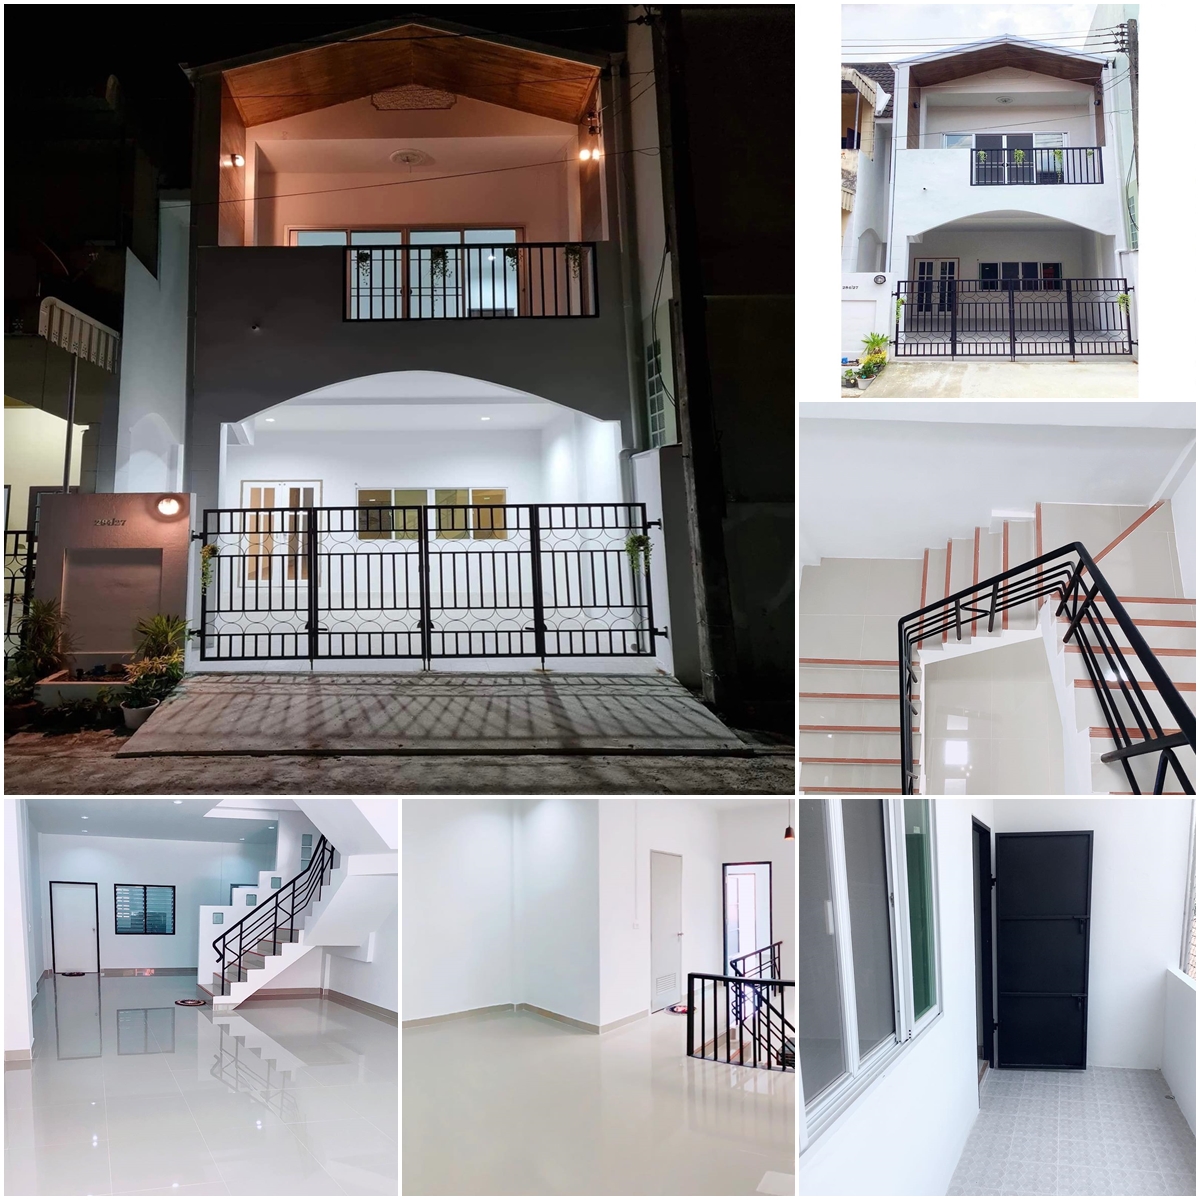 ขายบ้าน 2 ชั้น ใจกลางเมืองตรัง สไตล์นอร์ดิก ราคาถูก (For sale! New nordic-minimalist design 2 floors house in downtown Trang City)